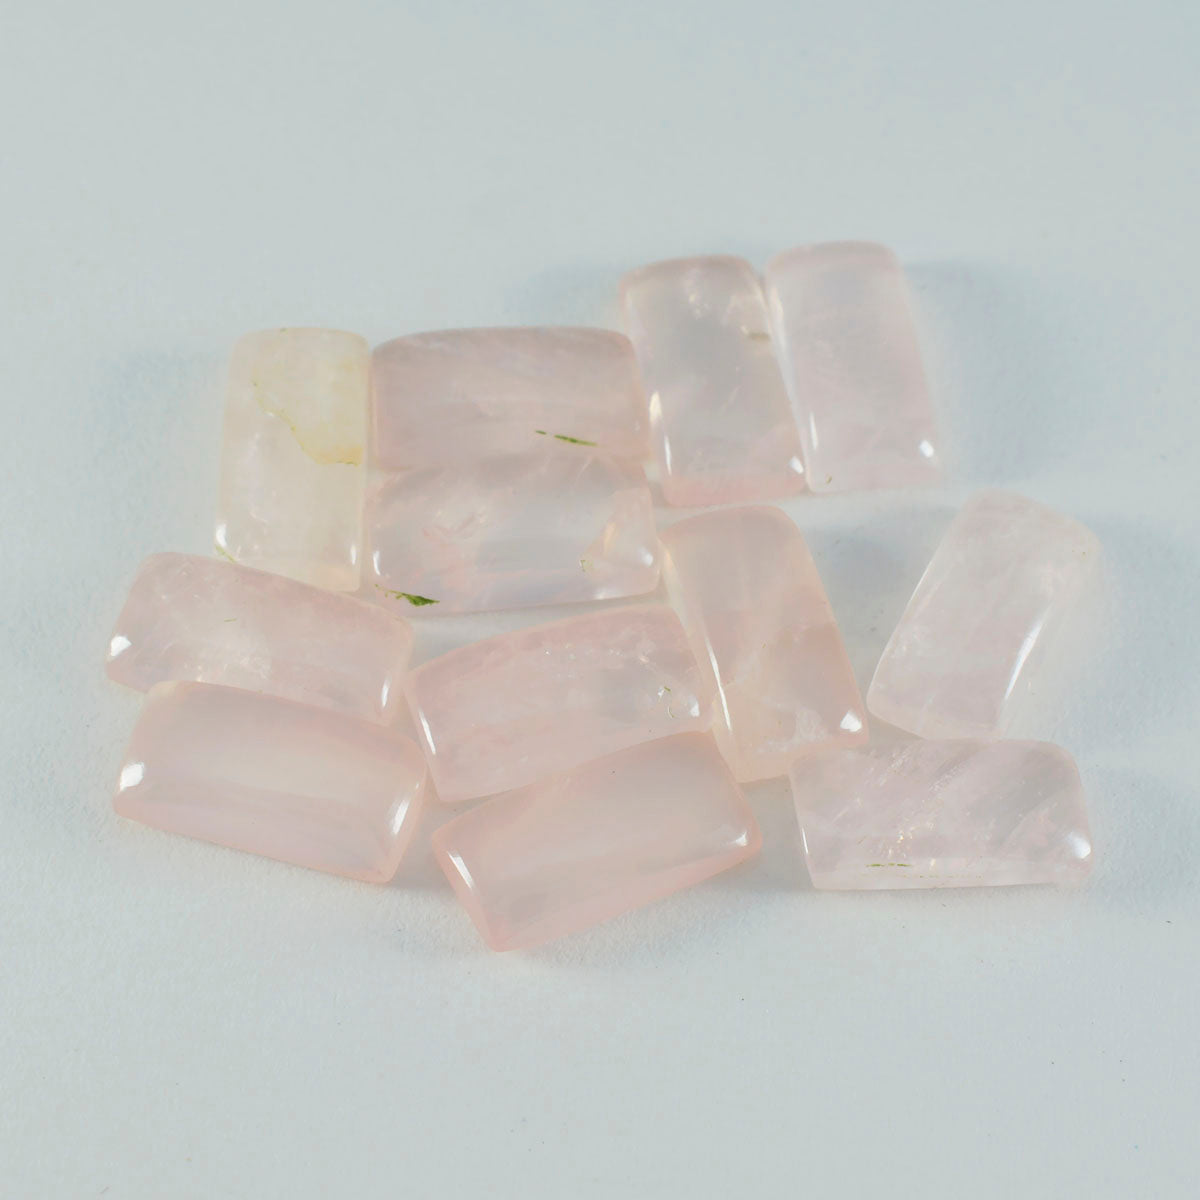 riyogems 1 шт. кабошон из розового кварца 5x10 мм в форме багета удивительного качества, свободный драгоценный камень